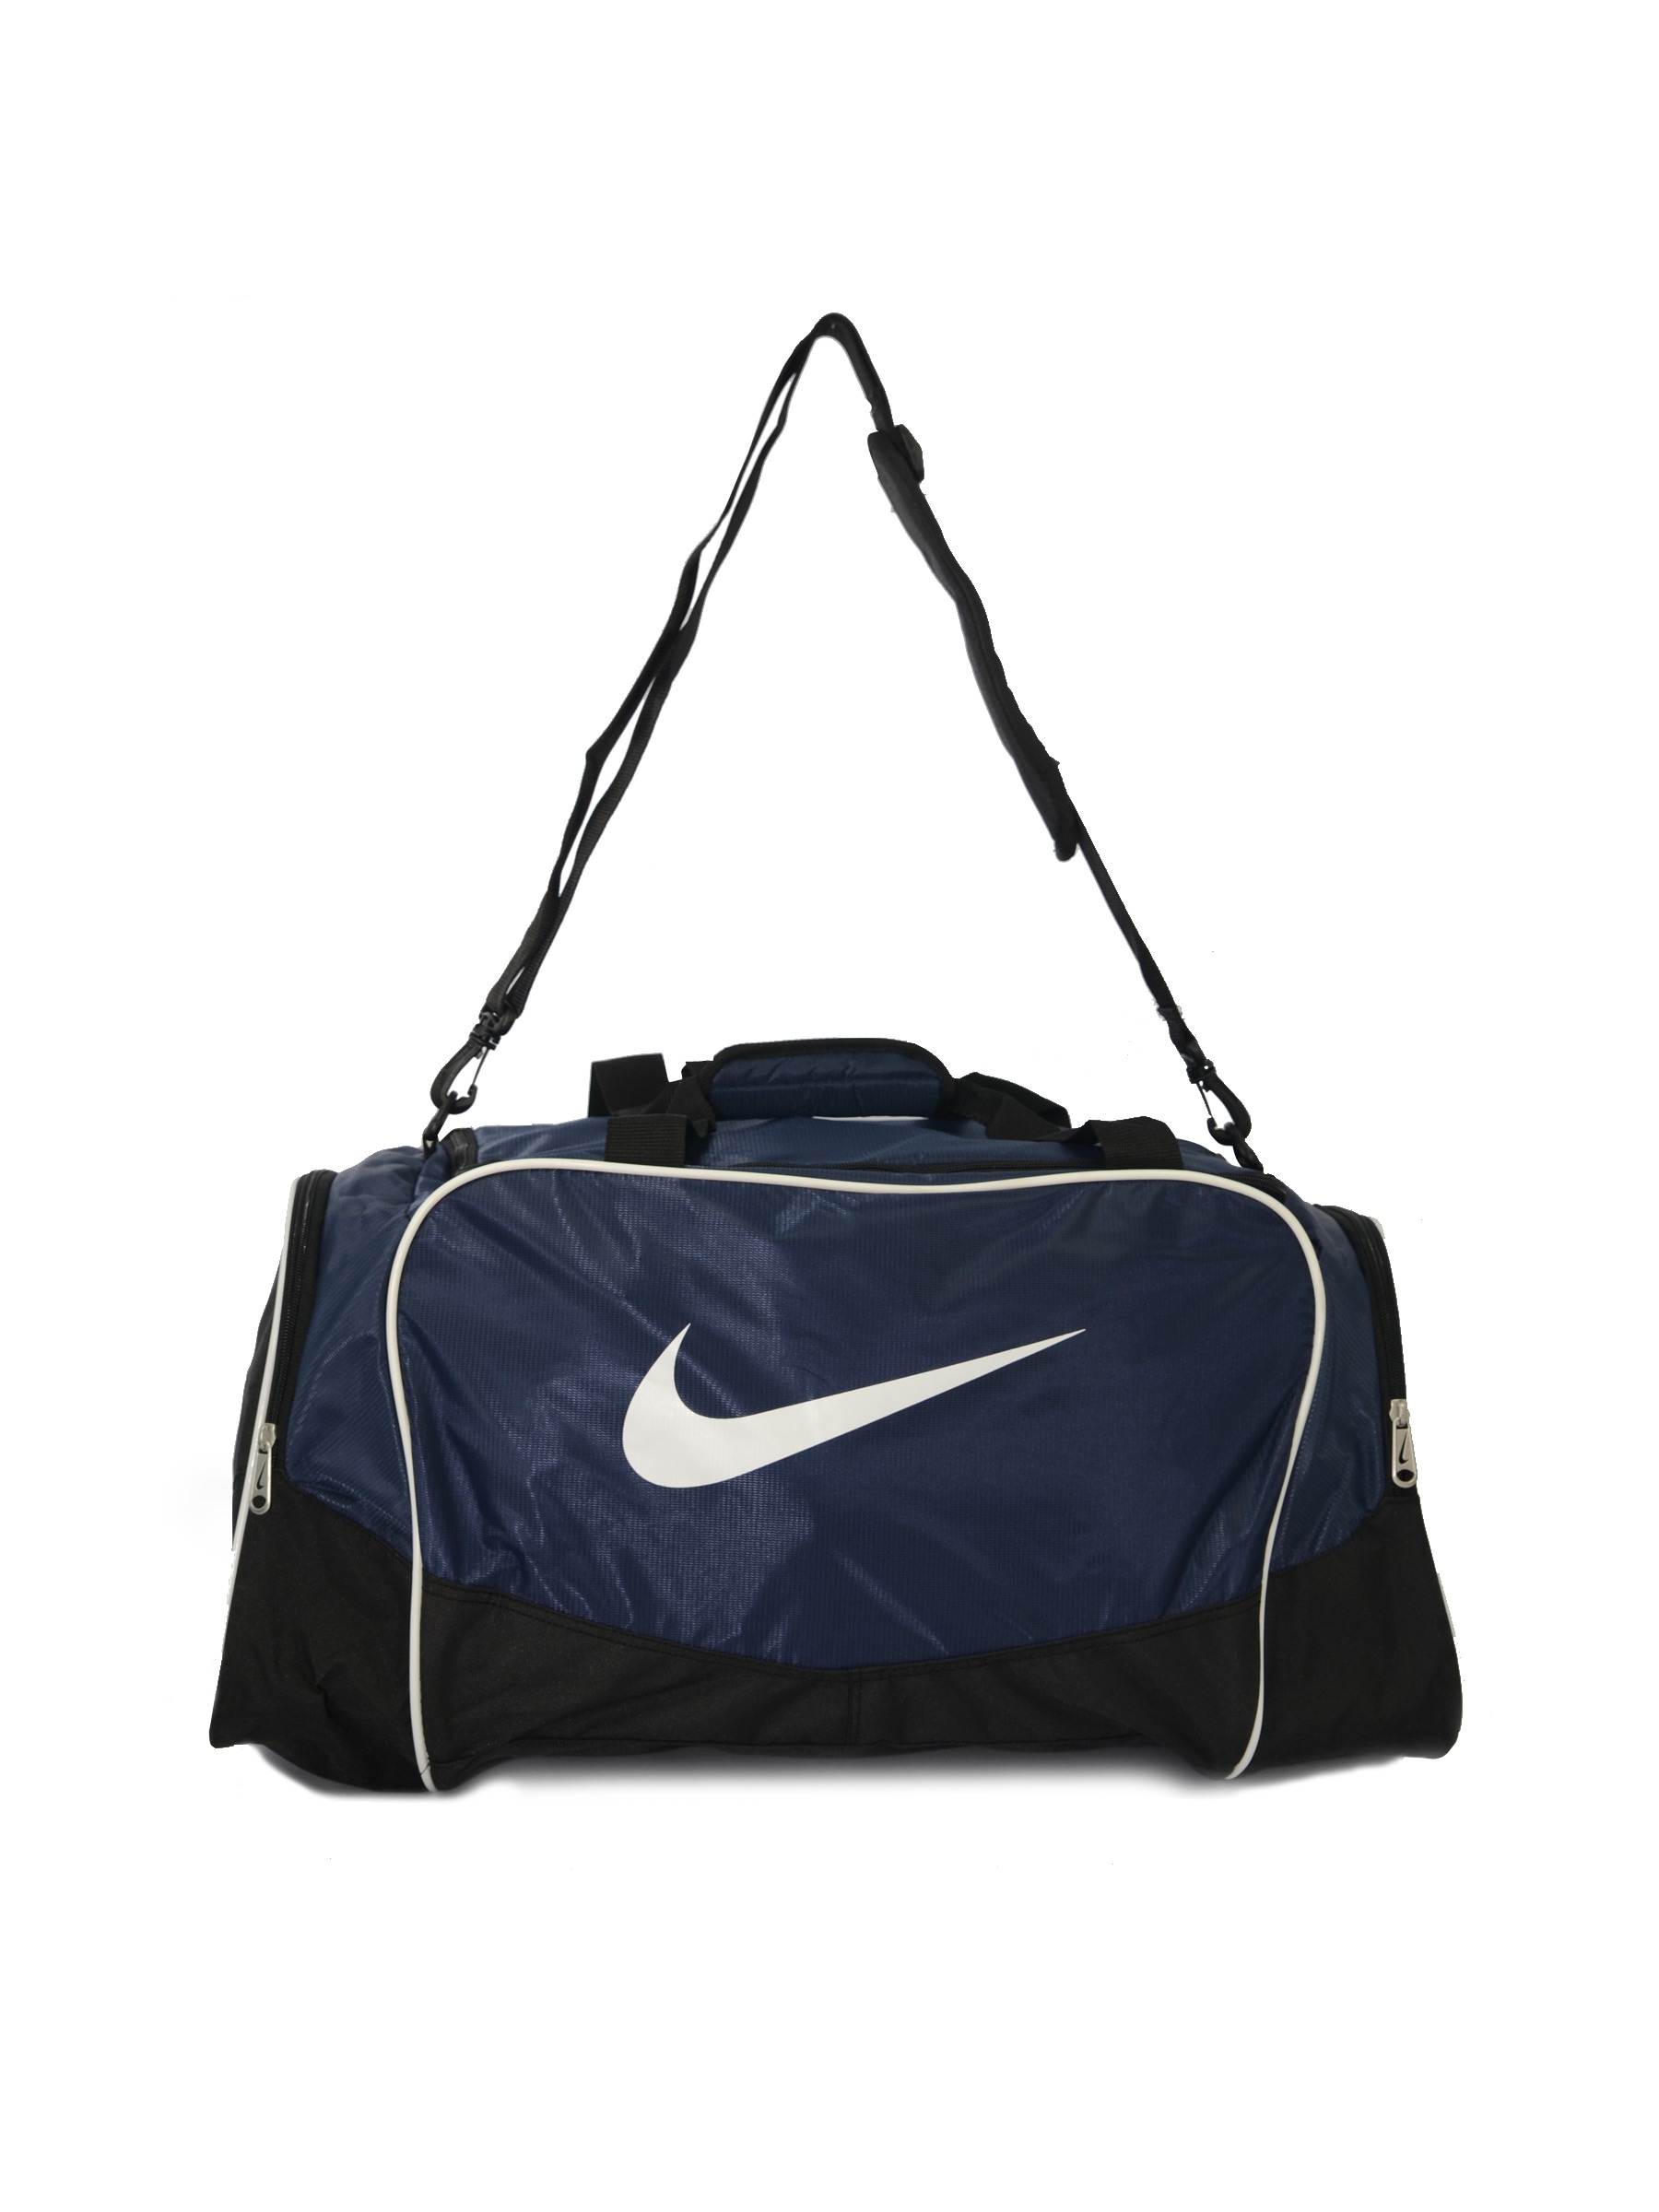 Nike Unisex Brasilia 4 Navy Blue Duffle Bag